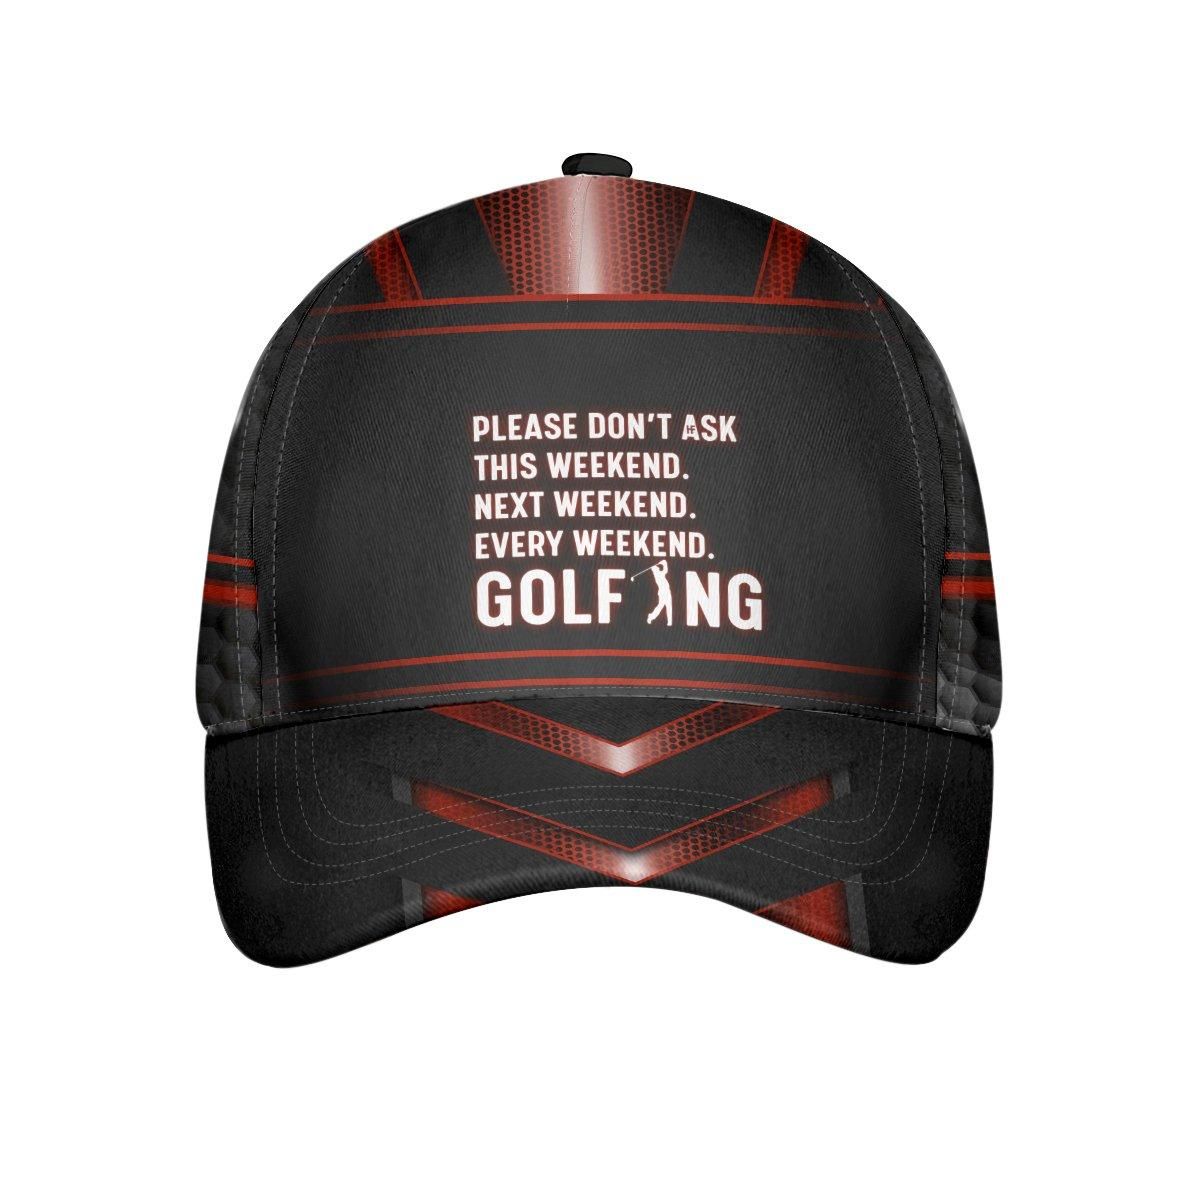 Every Weekend Golfing Cap